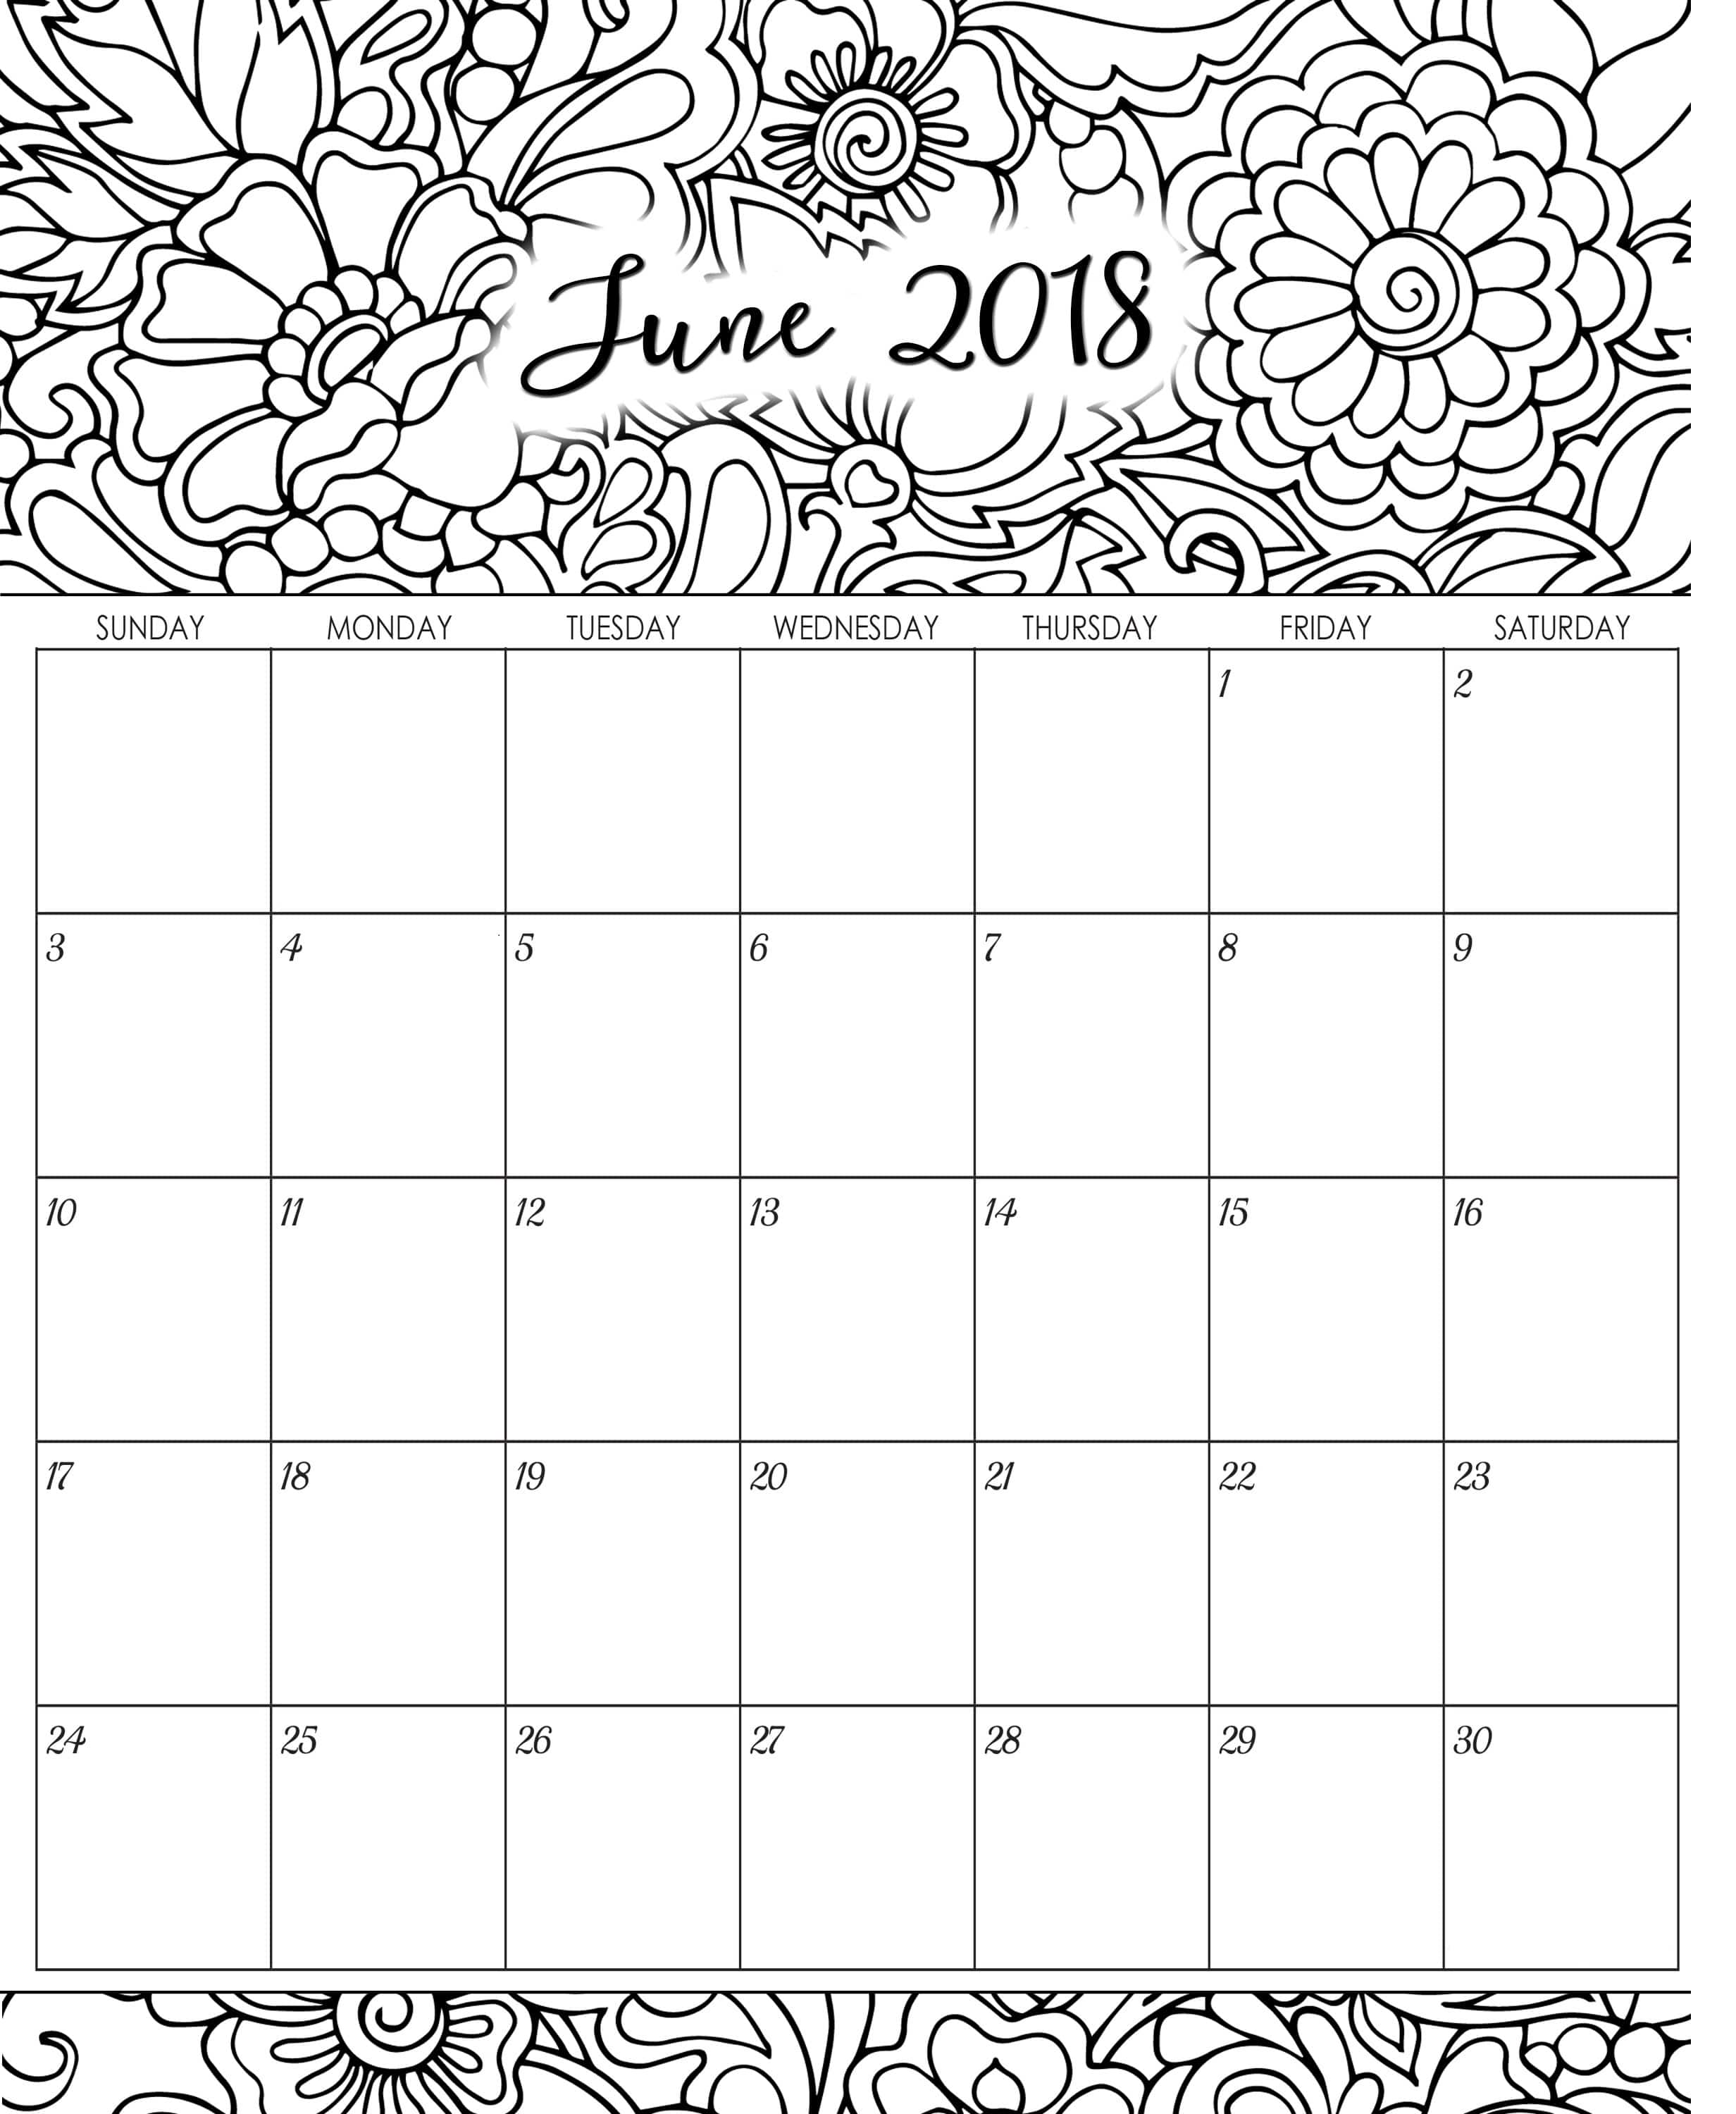 June 2018 Calendar Printable 